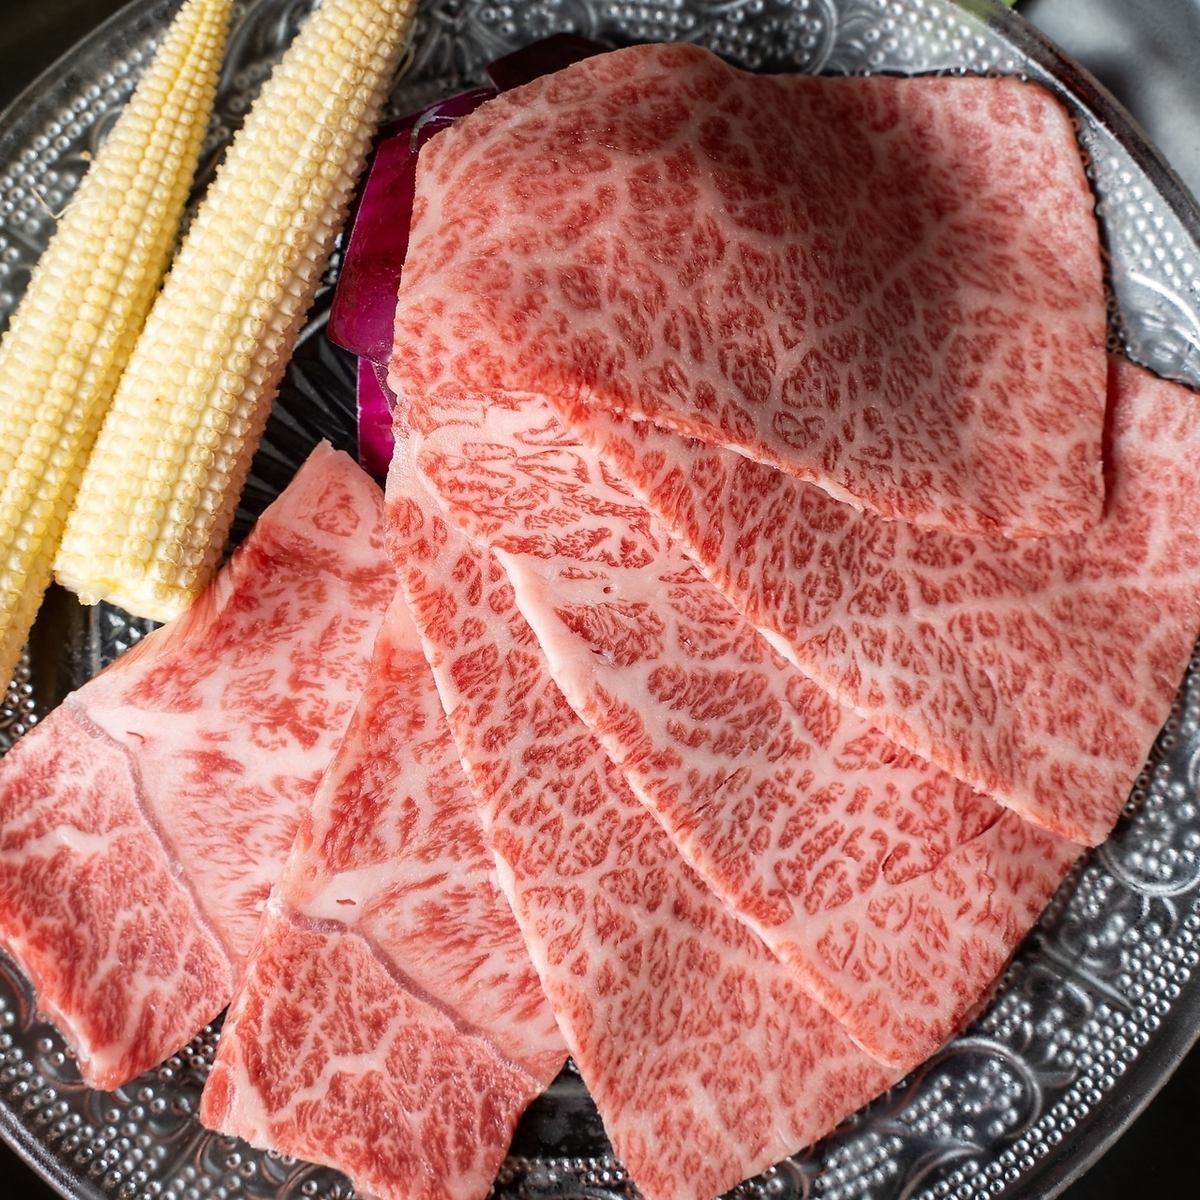 上質なA4広島牛のみを使用した焼肉をご堪能ください